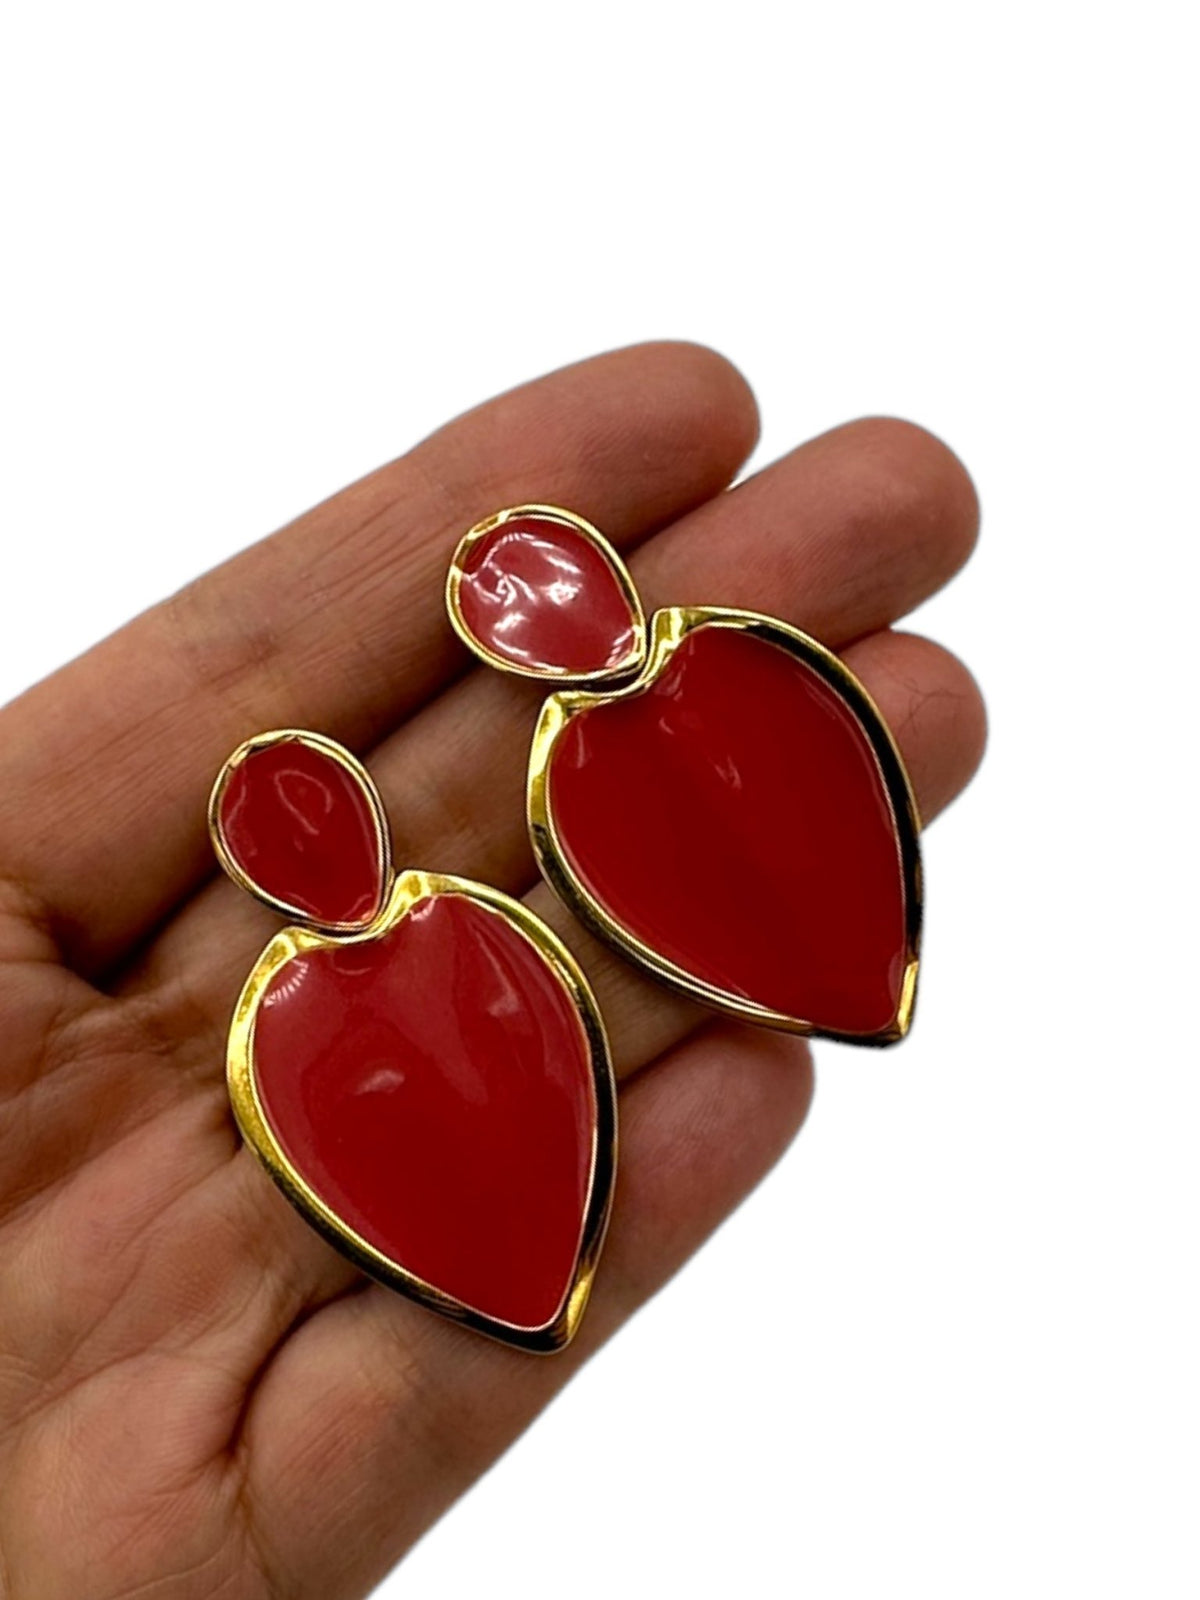 Napier Mauve Pink Enamel Dangle Pierced Earrings - 24 Wishes Vintage Jewelry